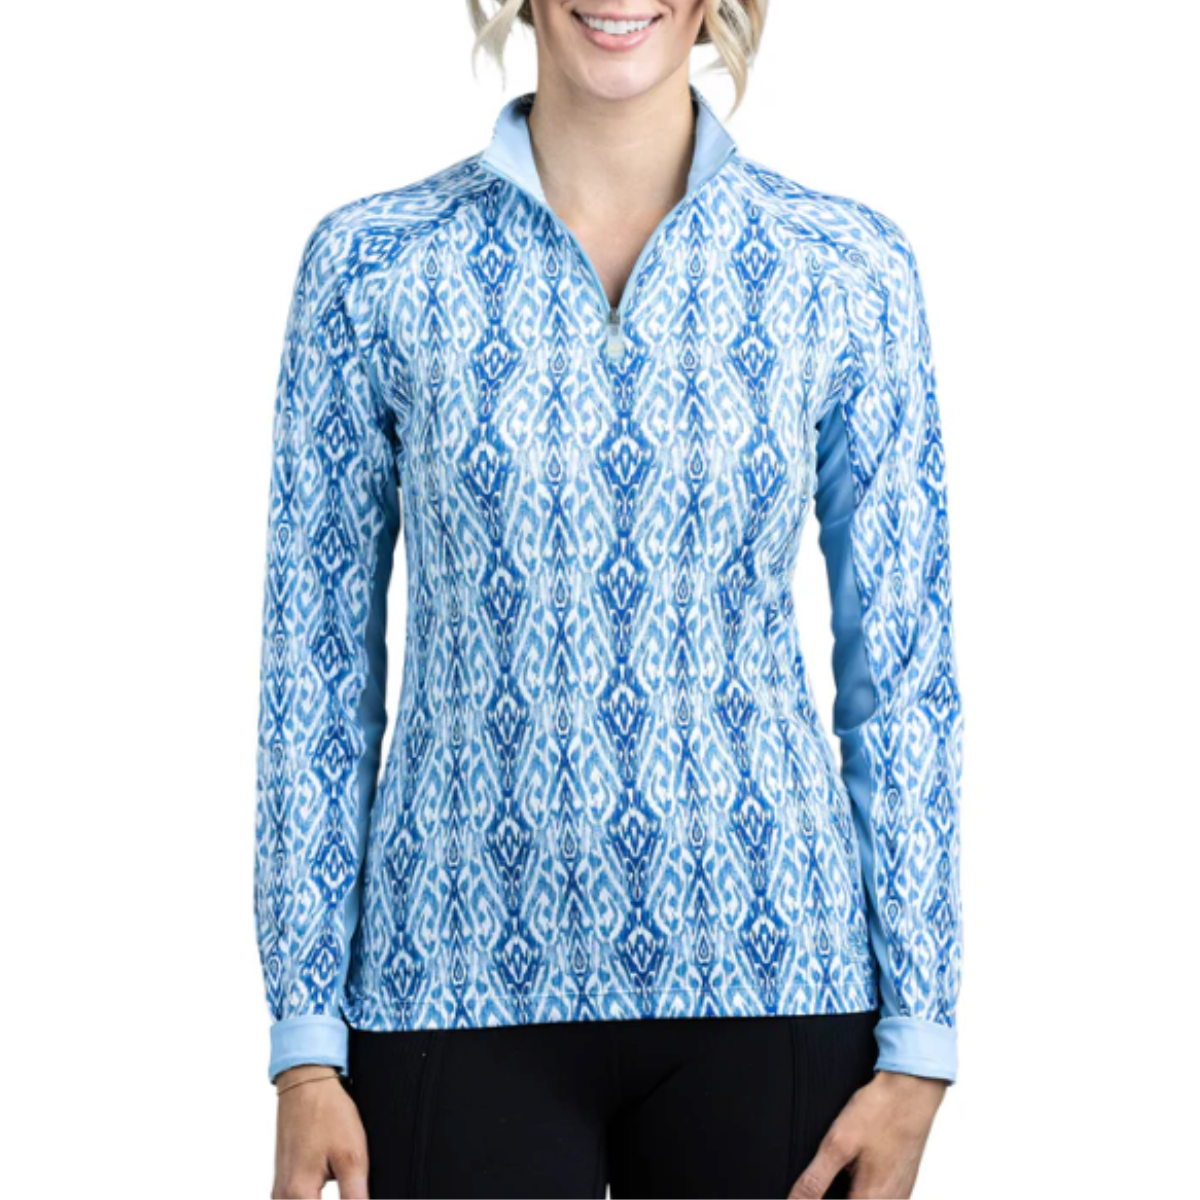 Kastel Long Sleeve 1/4 Zip Shirt in Pacific Blue Ikat